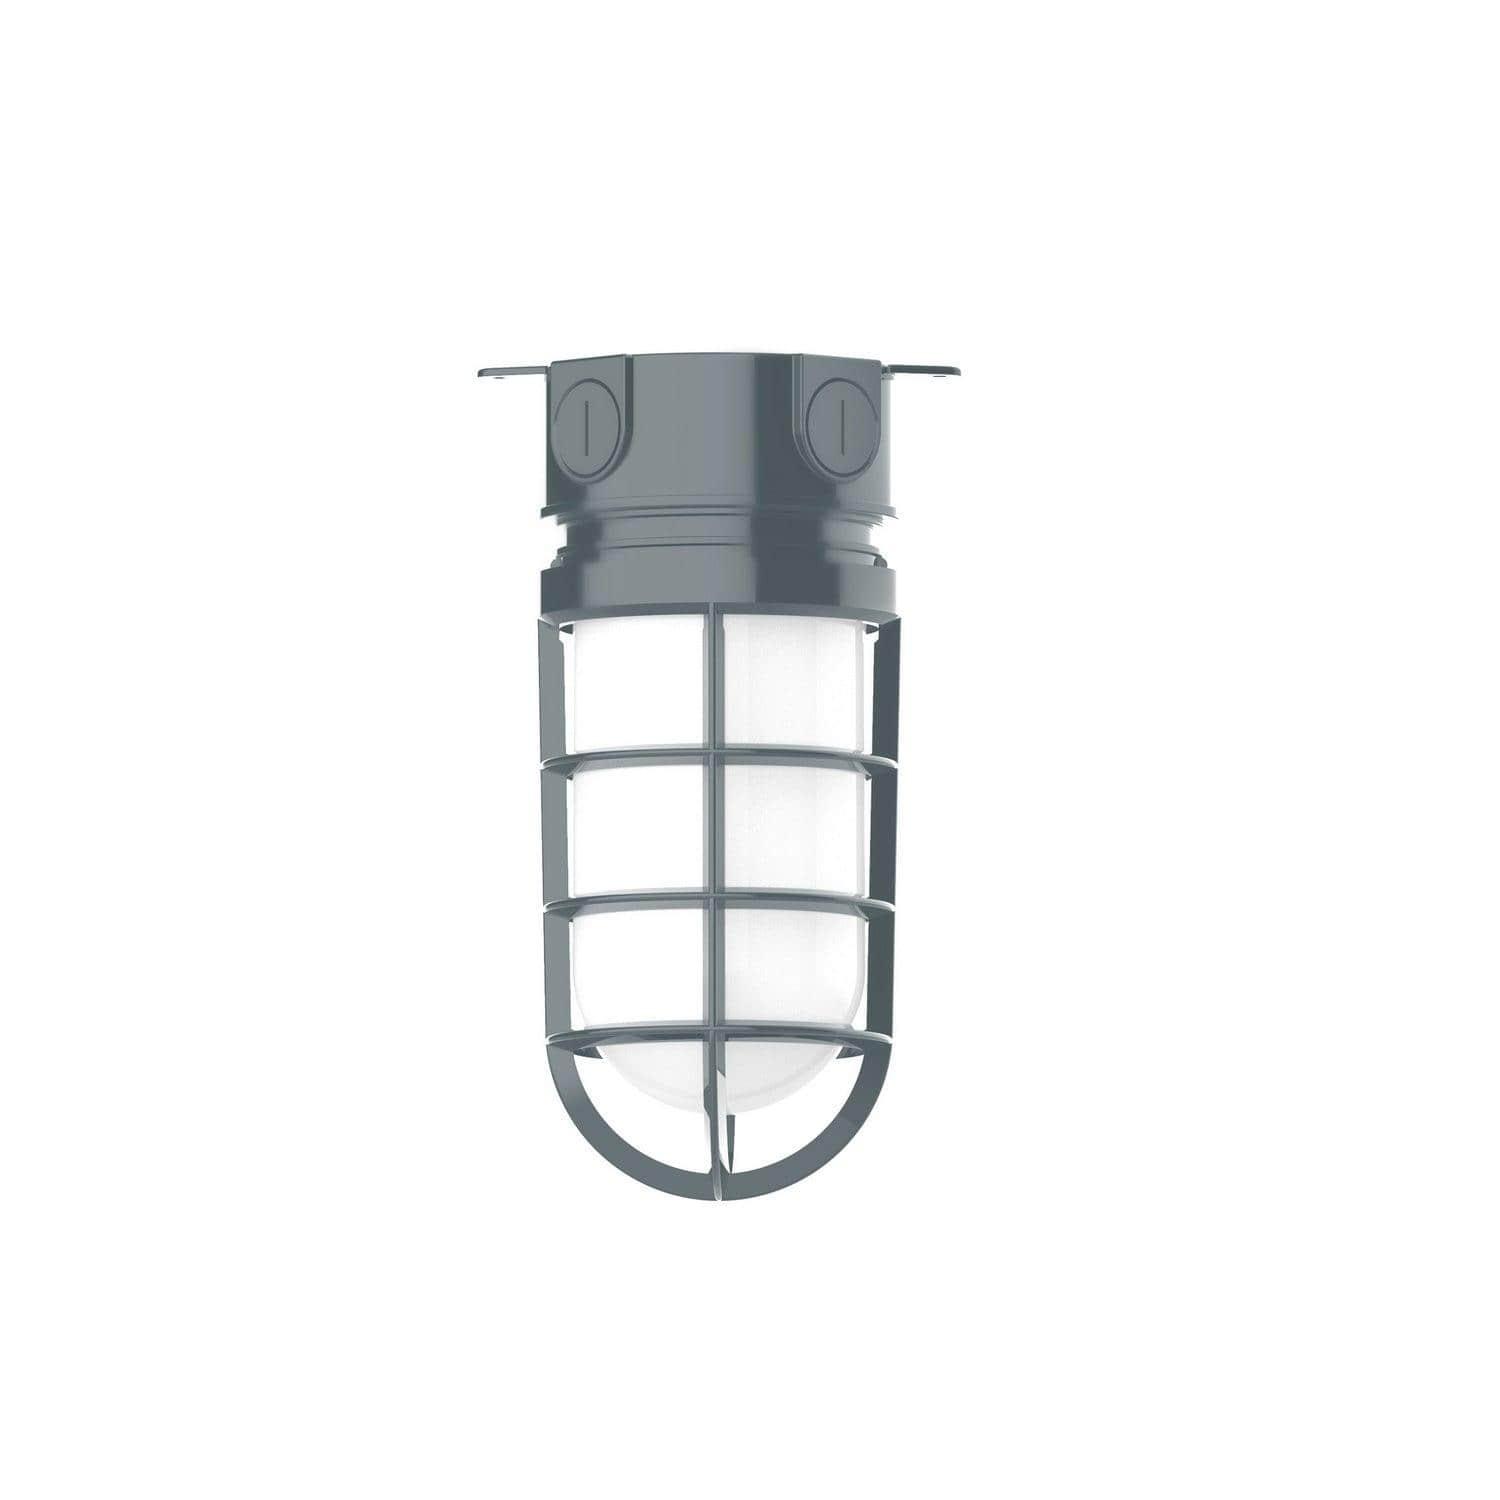 Montclair Light Works - Vaportite 5 1/2 Inch Flush Mount Ceiling Light - FMC050-40 | Montreal Lighting & Hardware